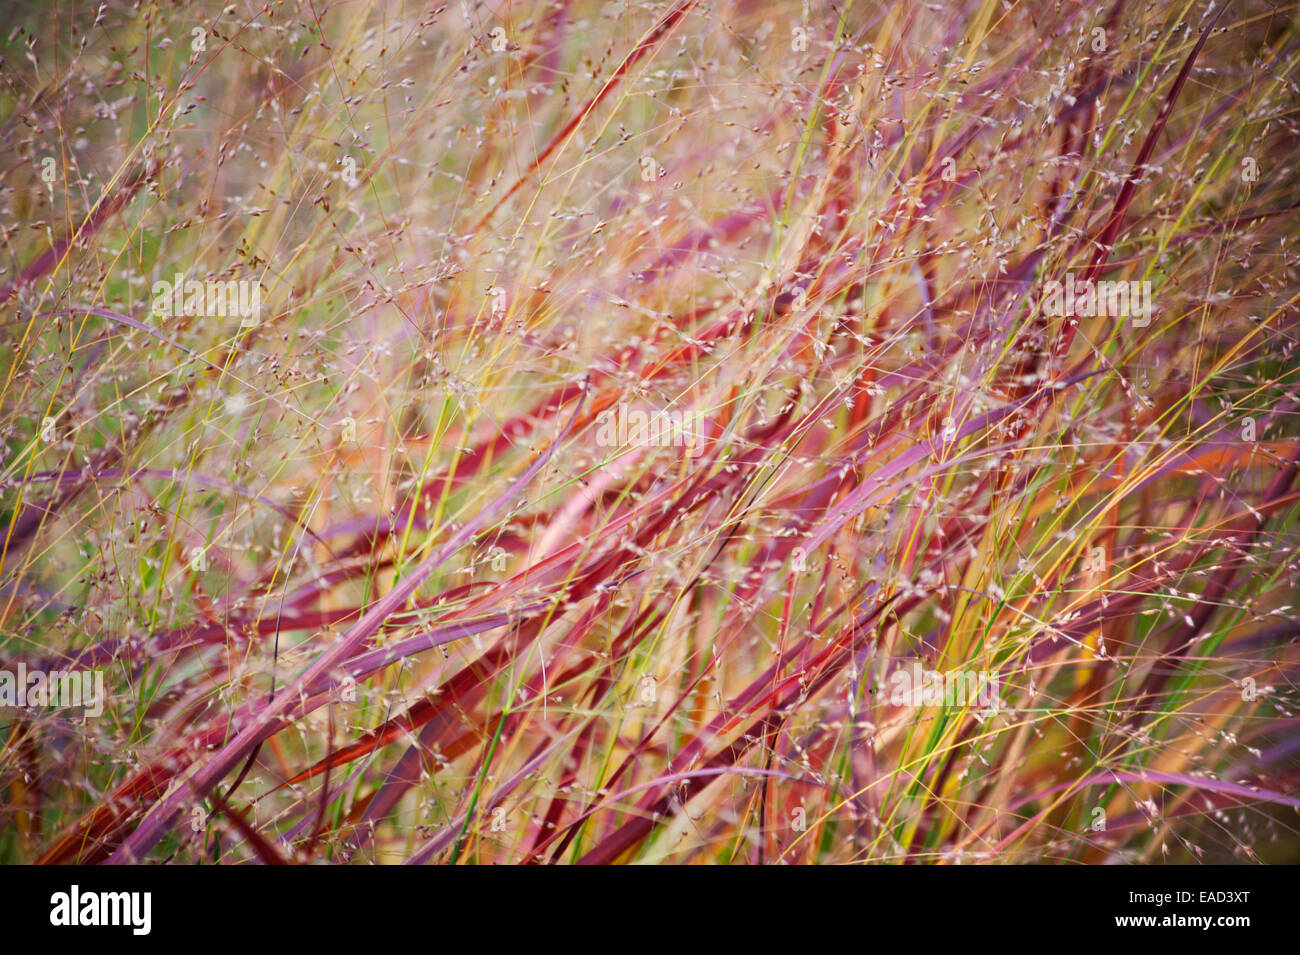 Grass, Switch grass, Panicum virgatum 'Rehbraun', Red subject. Stock Photo